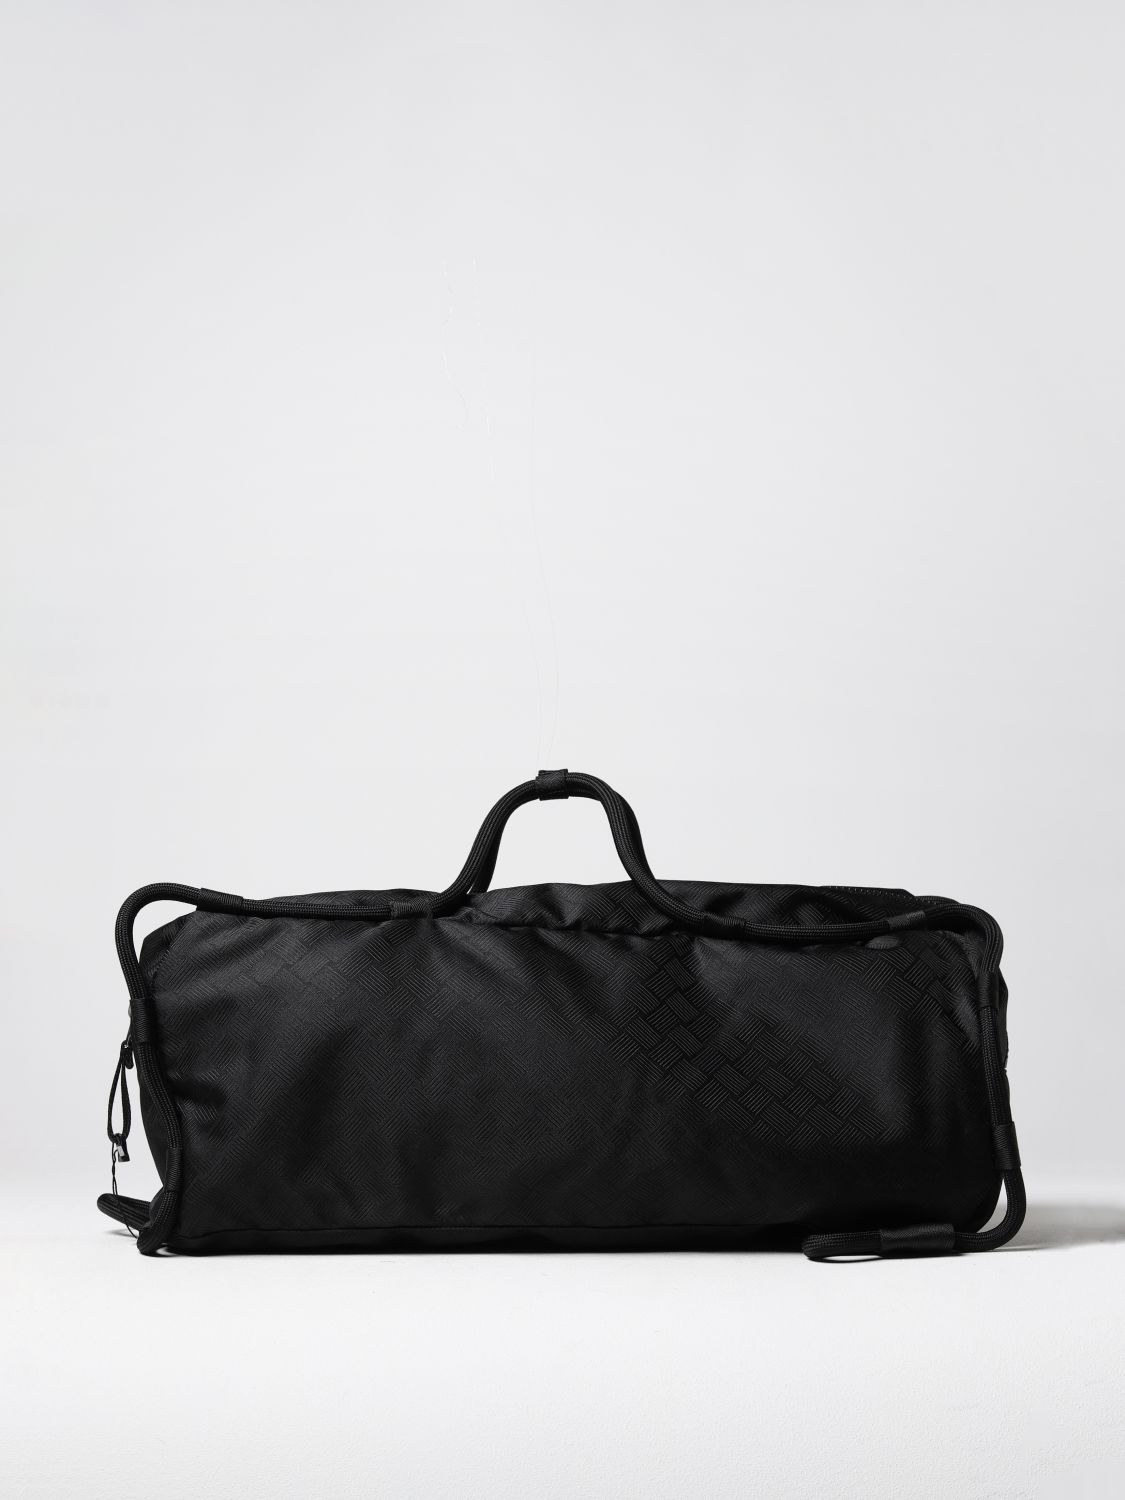 BOTTEGA VENETA: travel bag for men - Black | Bottega Veneta travel bag ...